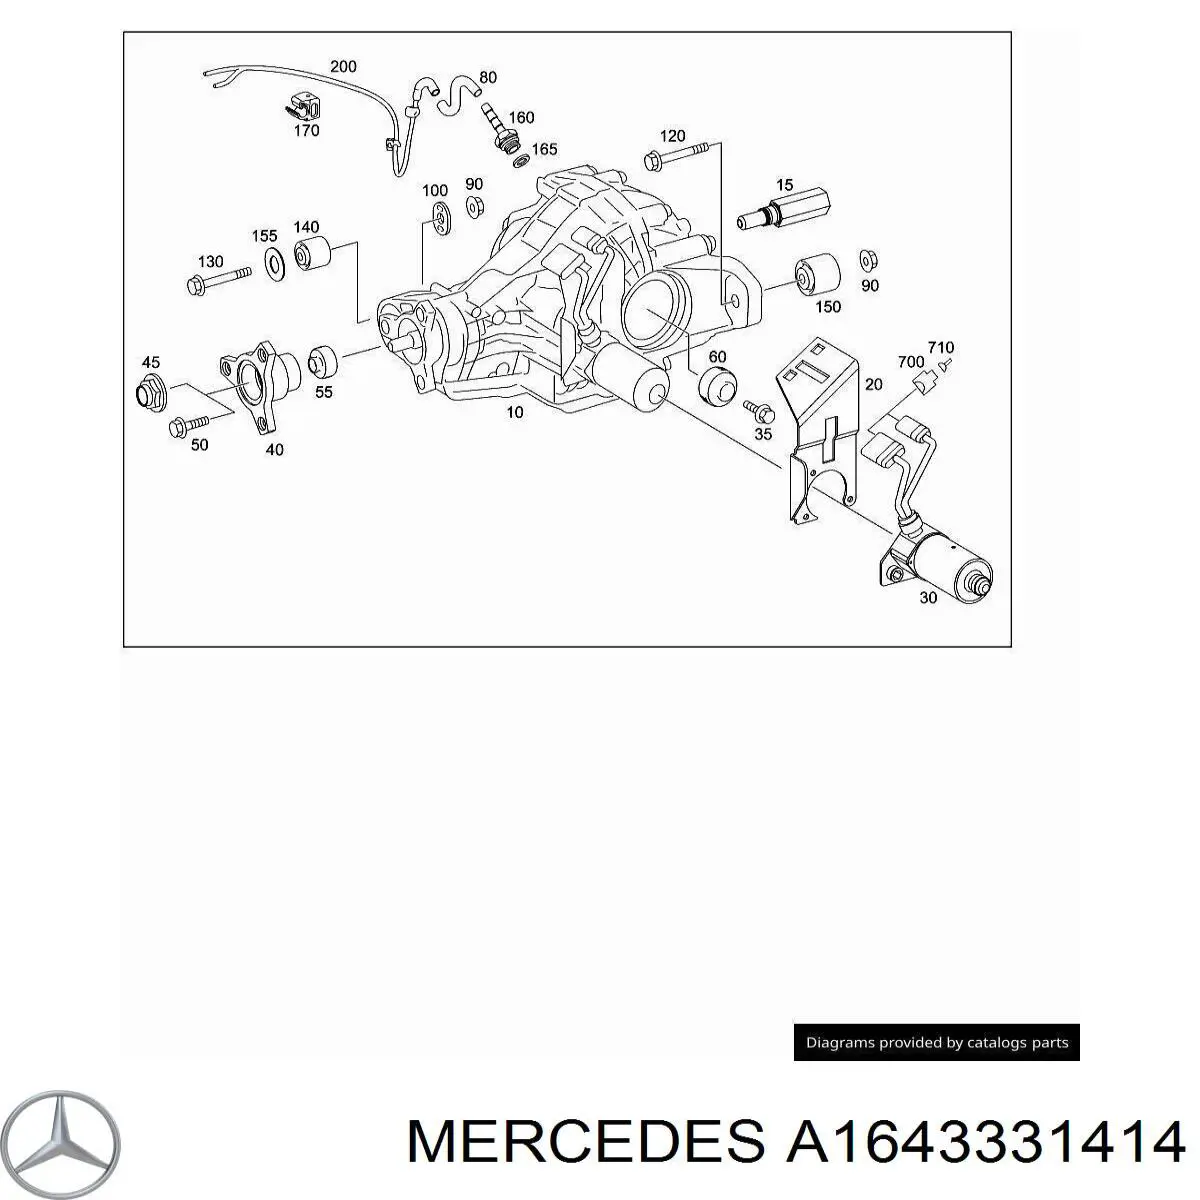 A1643331414 Mercedes silentblock, soporte de diferencial, eje trasero, delantero